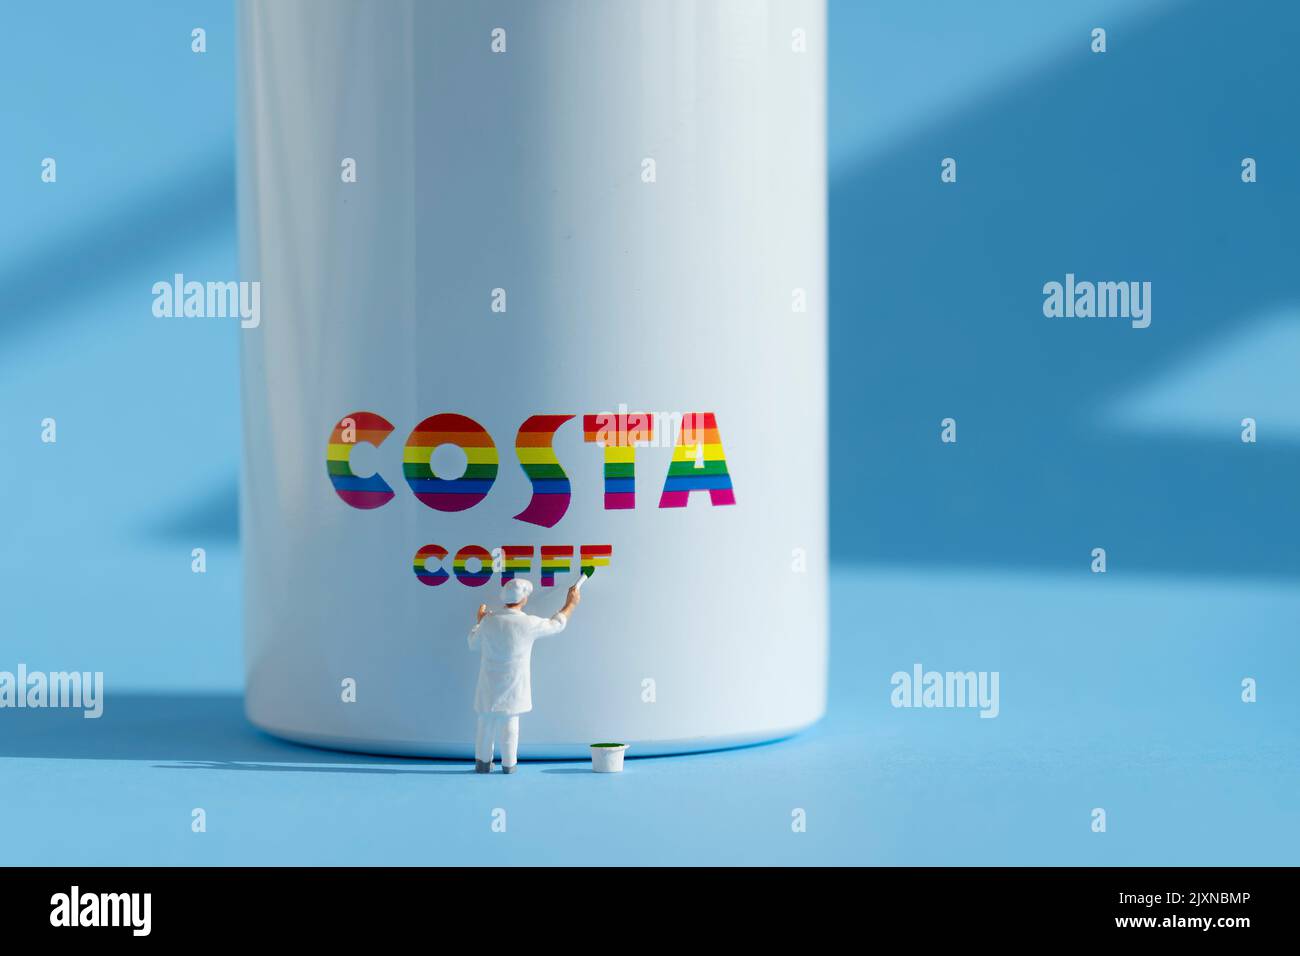 Auf der Seite einer Wasserflasche ist eine kleine Malerfigur abgebildet, die ein Costa-Logo zeigt. Das Branding ist in LGBTQ-Regenbogenfarben gehalten Stockfoto